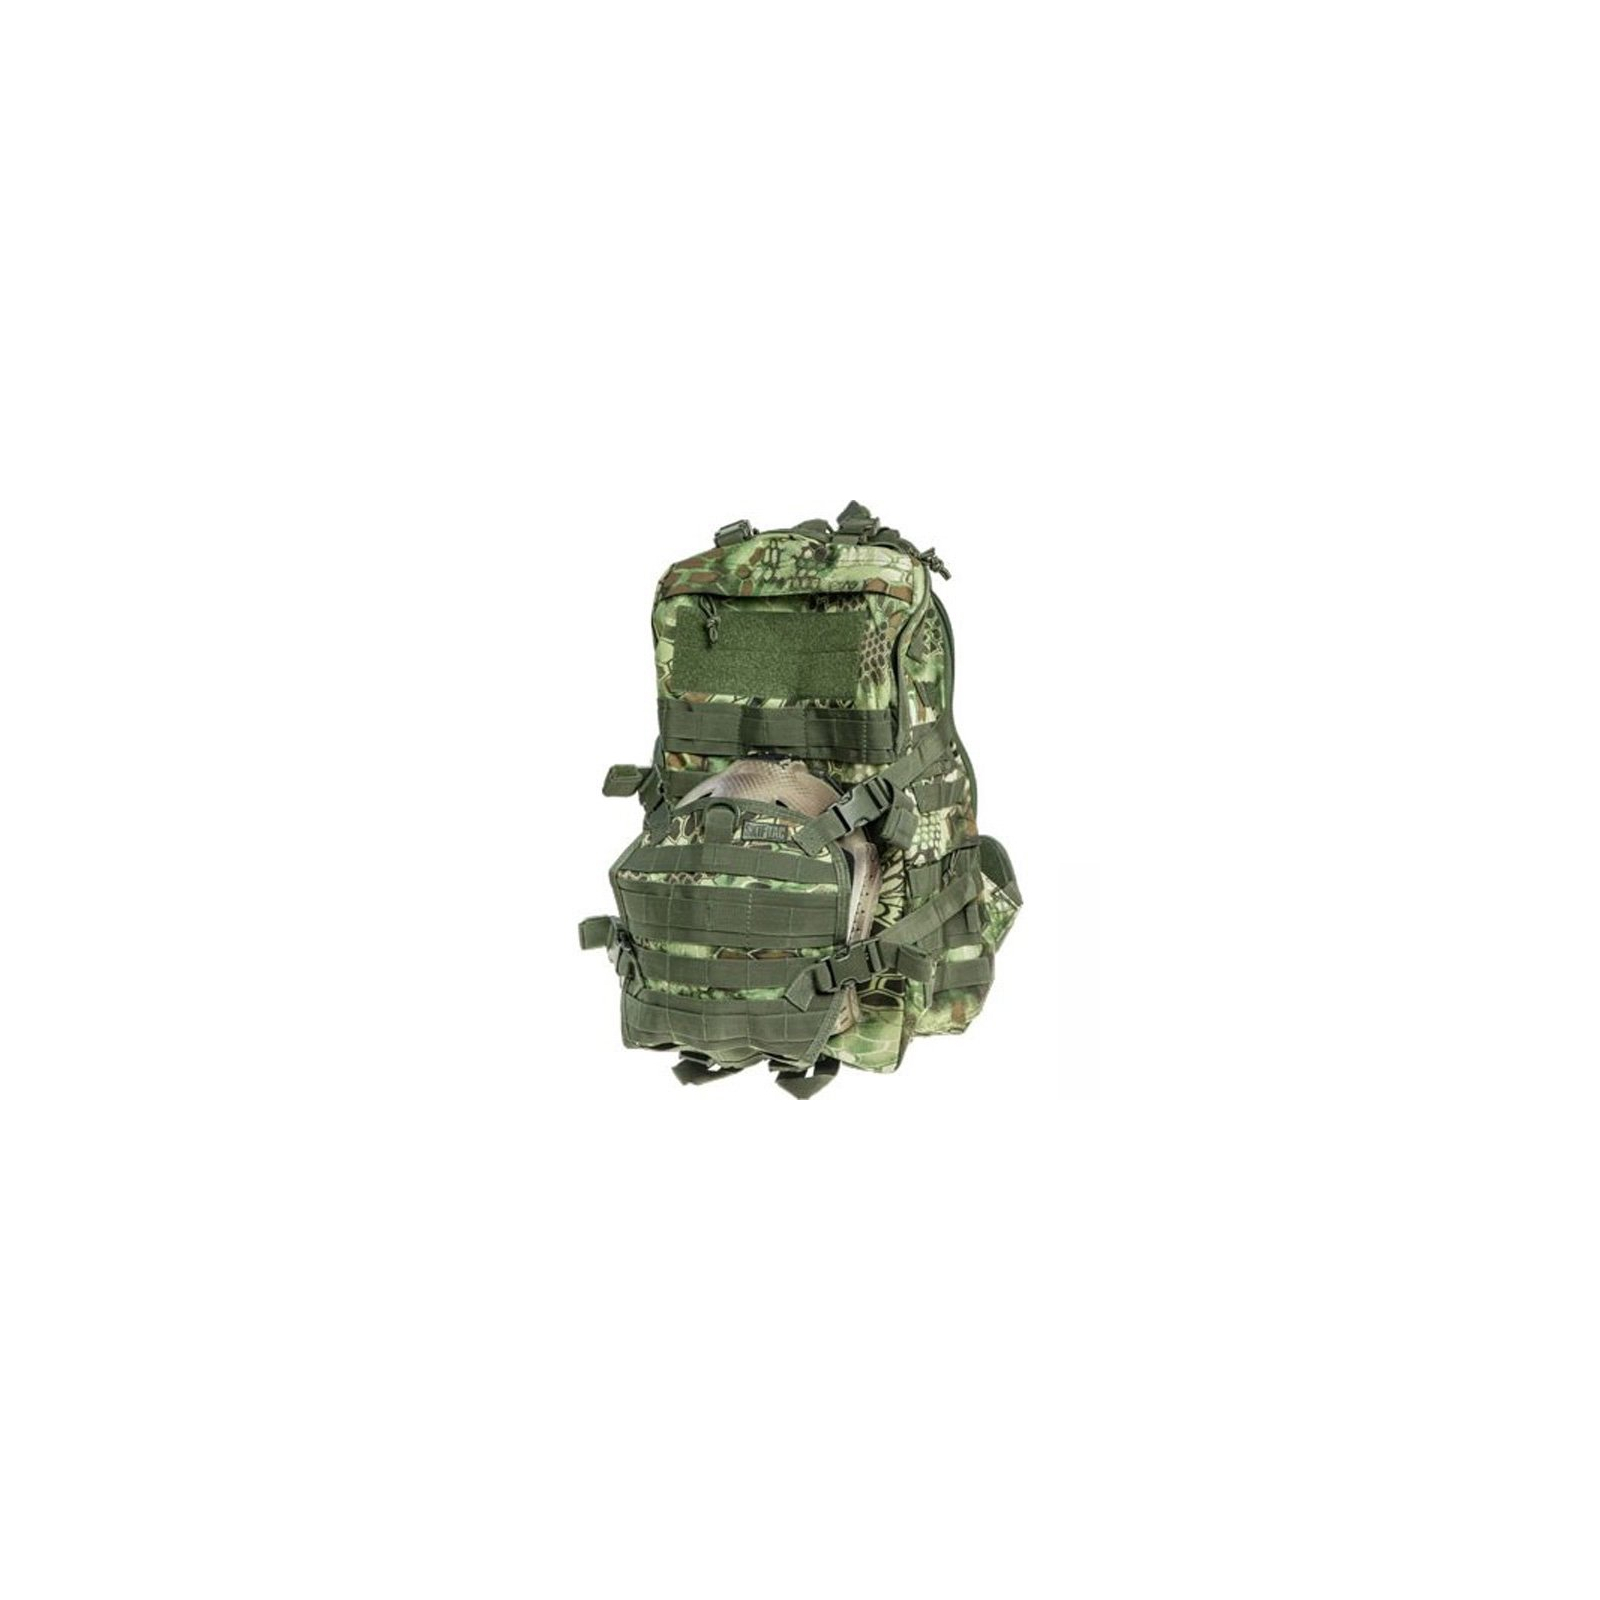 Рюкзак туристический Skif Tac тактический патрульный 35 литров kryptek green (GB0110-KGR)